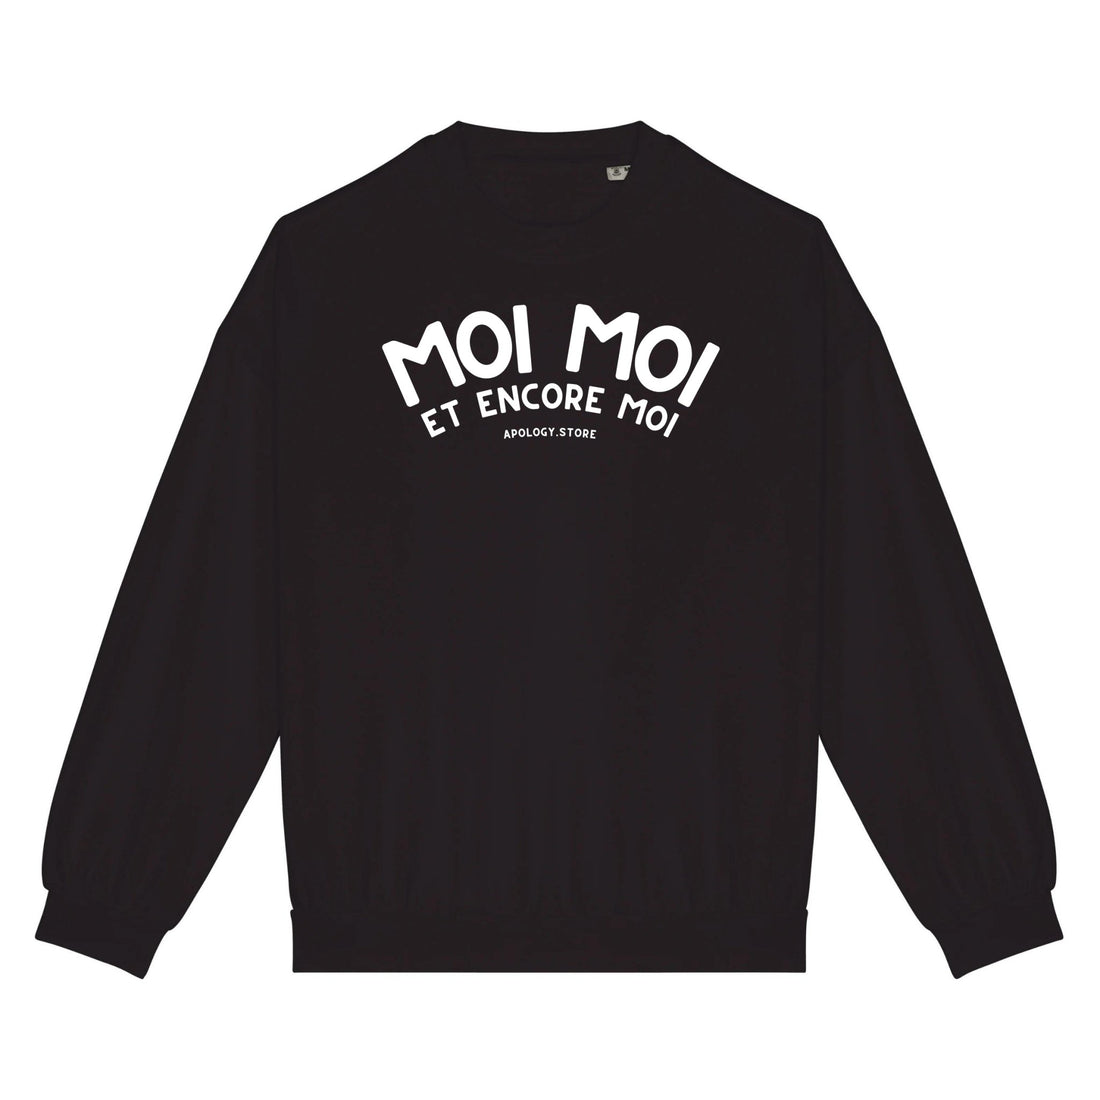 Sweat-shirt Moi Moi Et Moi Encore - Fabriqué au Portugal XS Noir - Imprimé en France